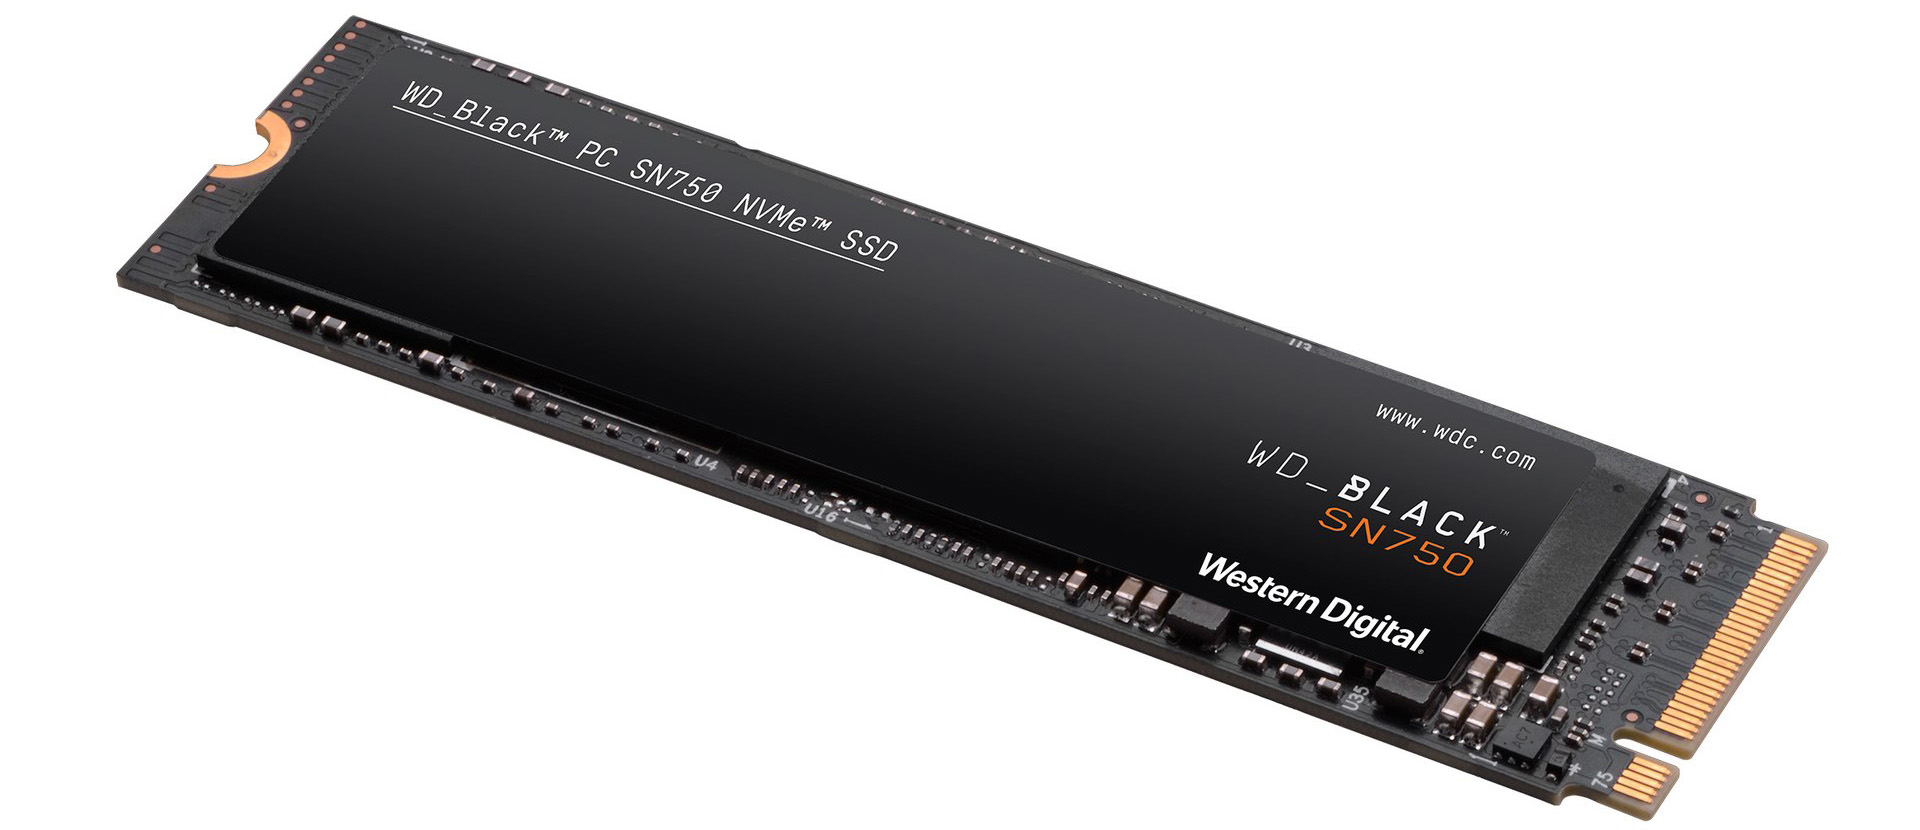 Review: WD Black SN750 NVMe SSD (1TB) - Storage - HEXUS.net